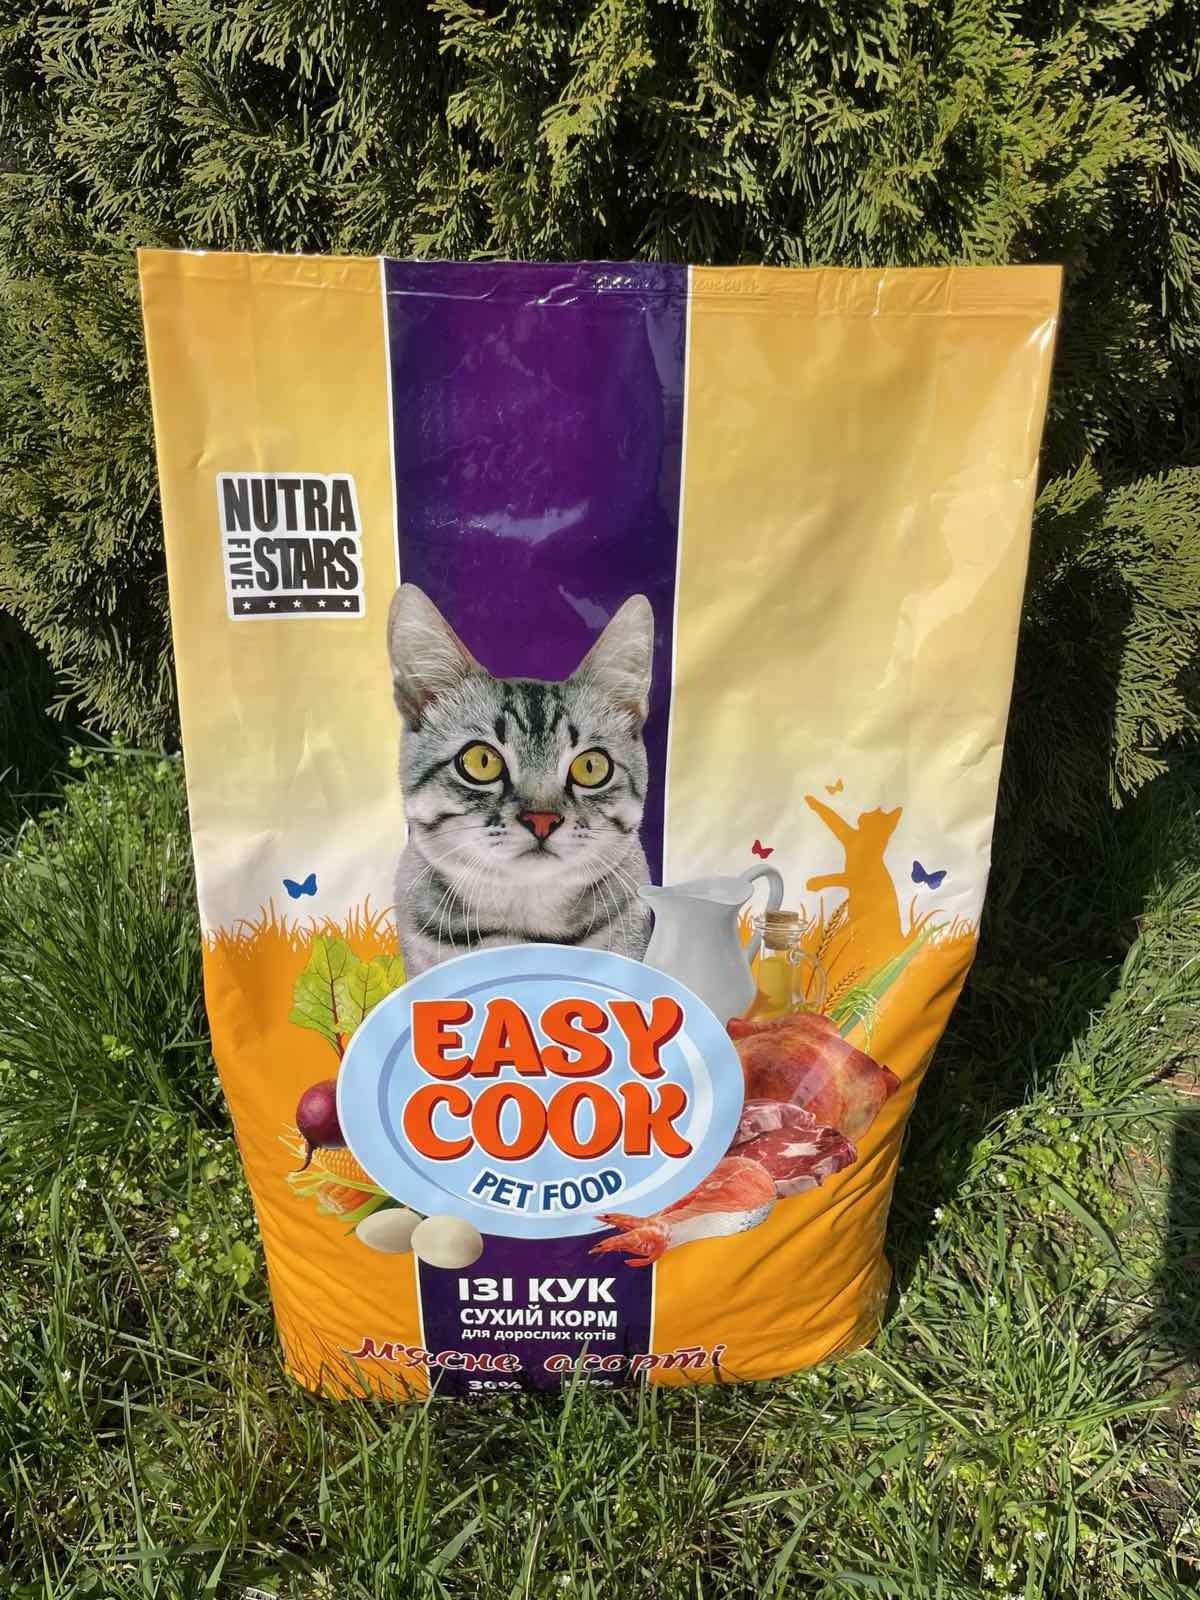 Сухий корм Nutra 5 stars для котів Easy Cook CAT м'ясне асорті 10 кг